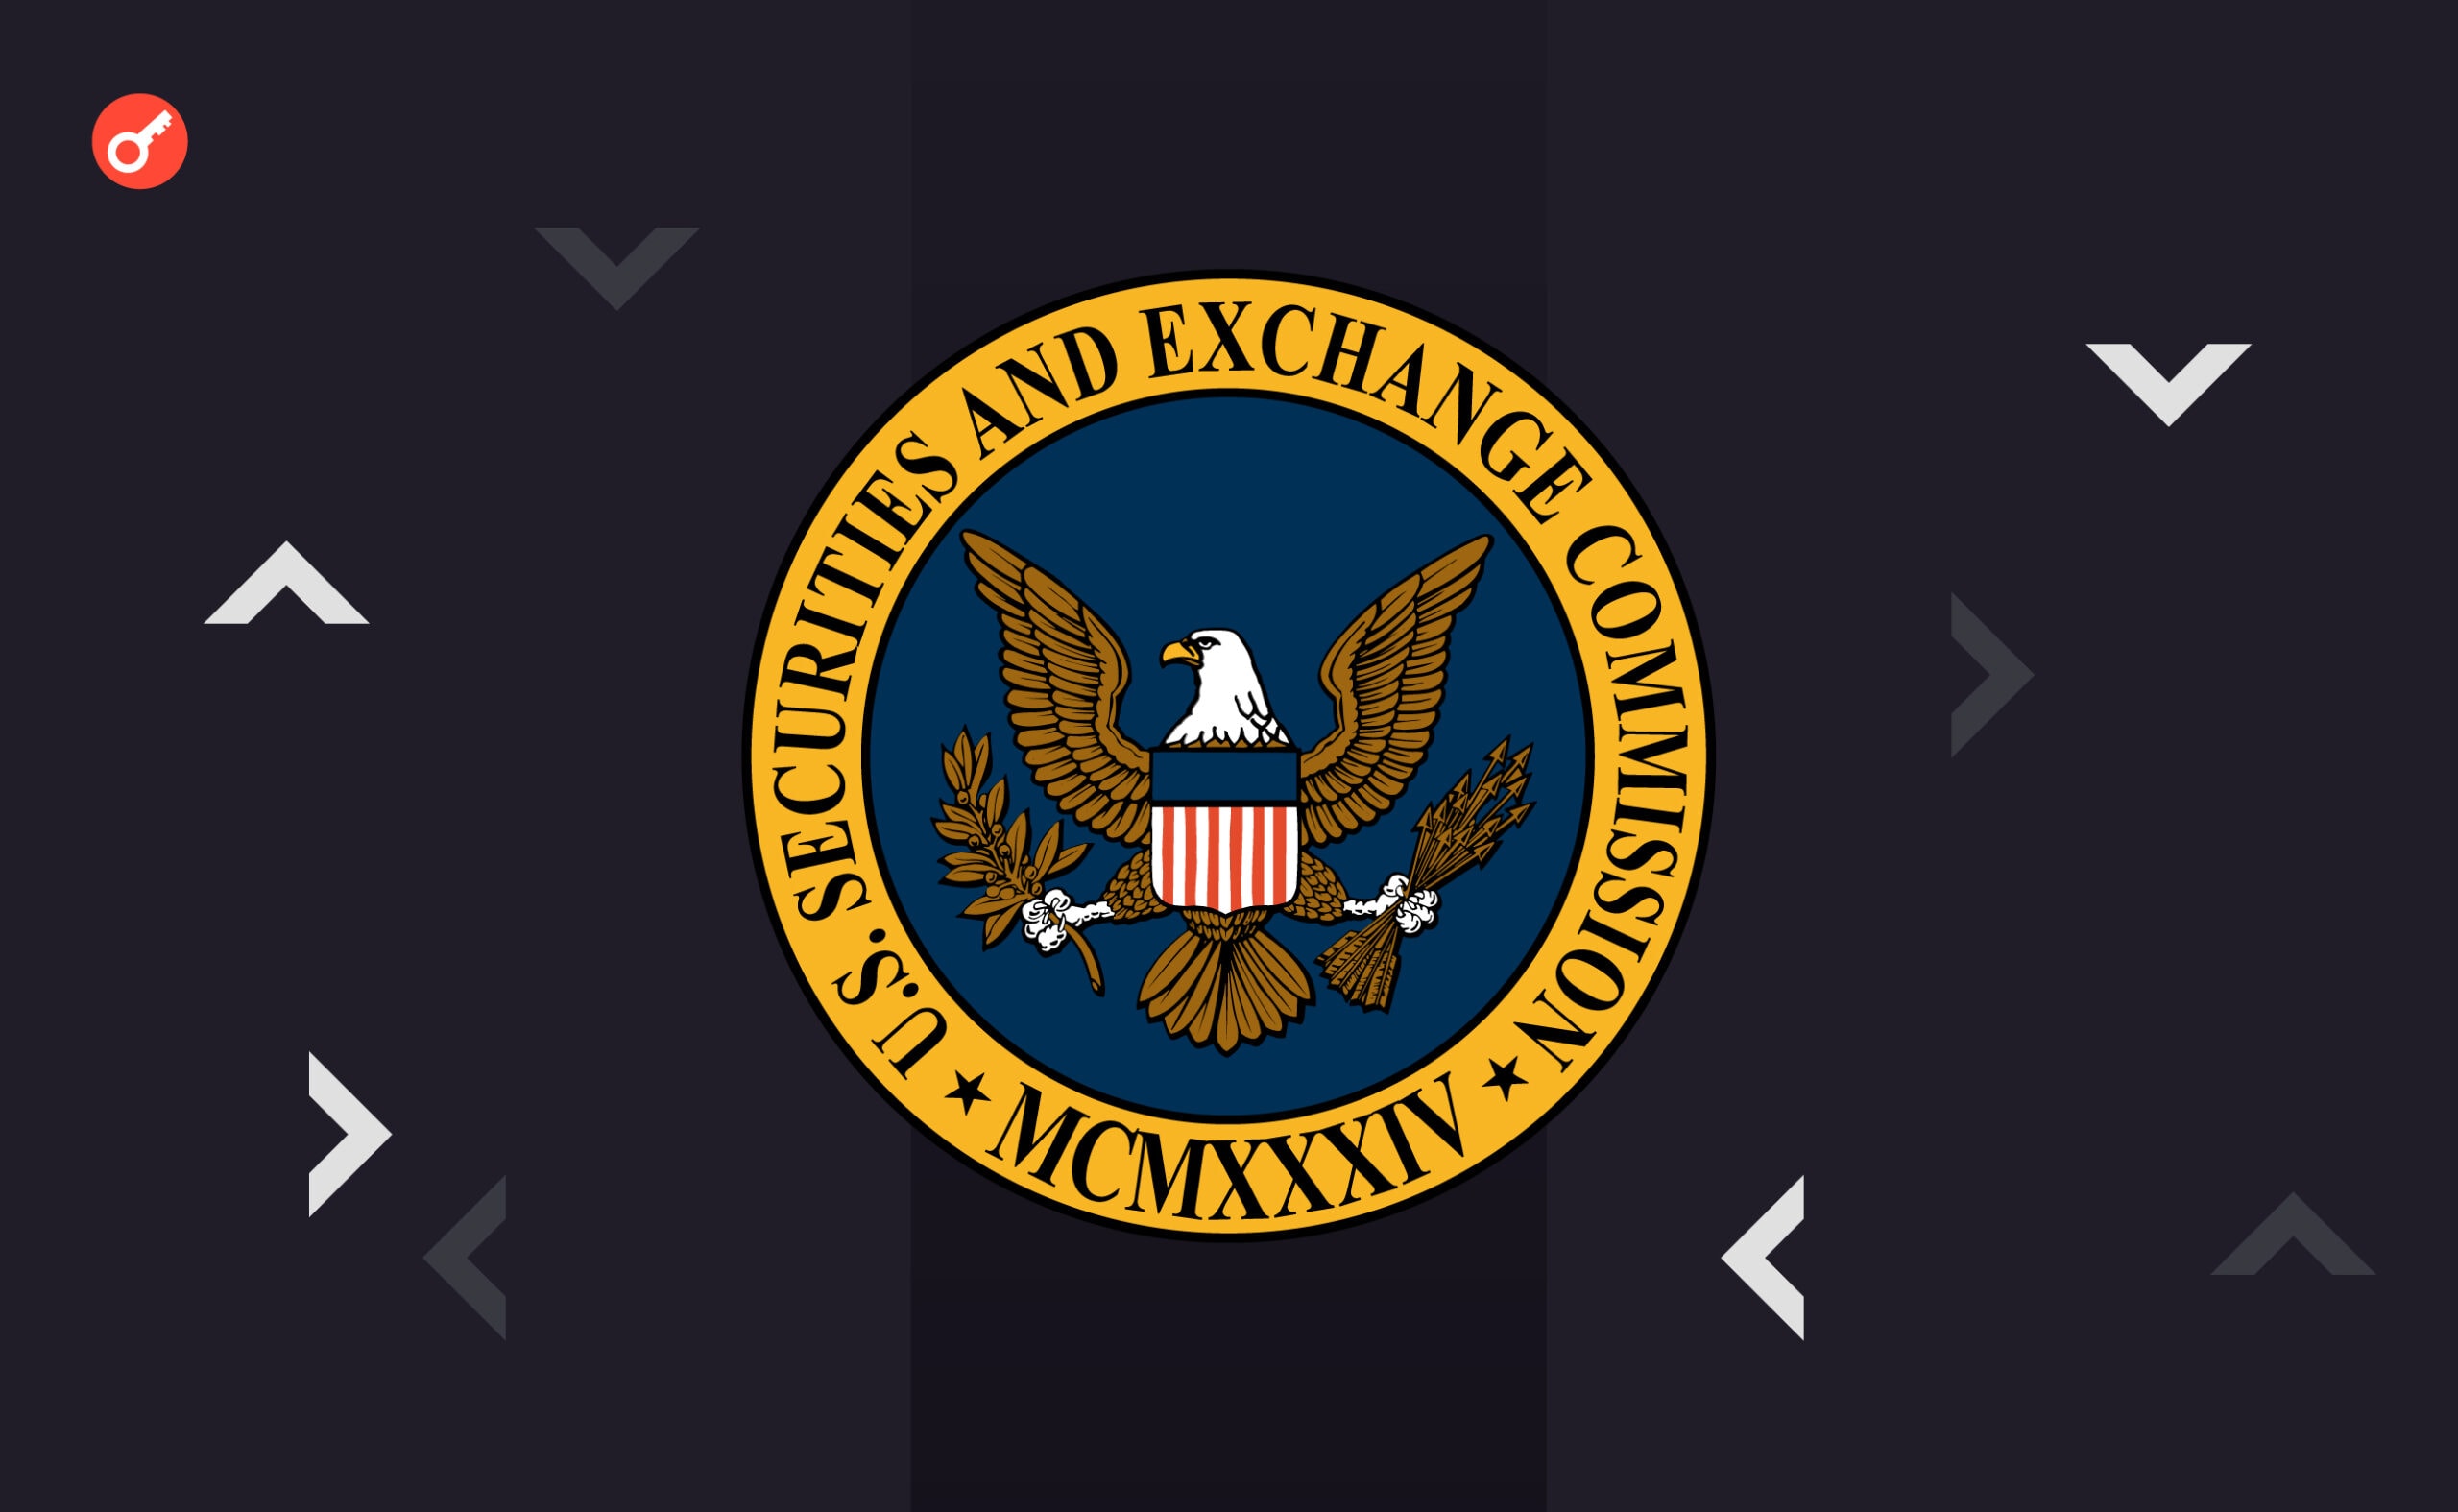 Марк Кьюбан обвинил SEC в миллионных убытках от FTX. Заглавный коллаж новости.